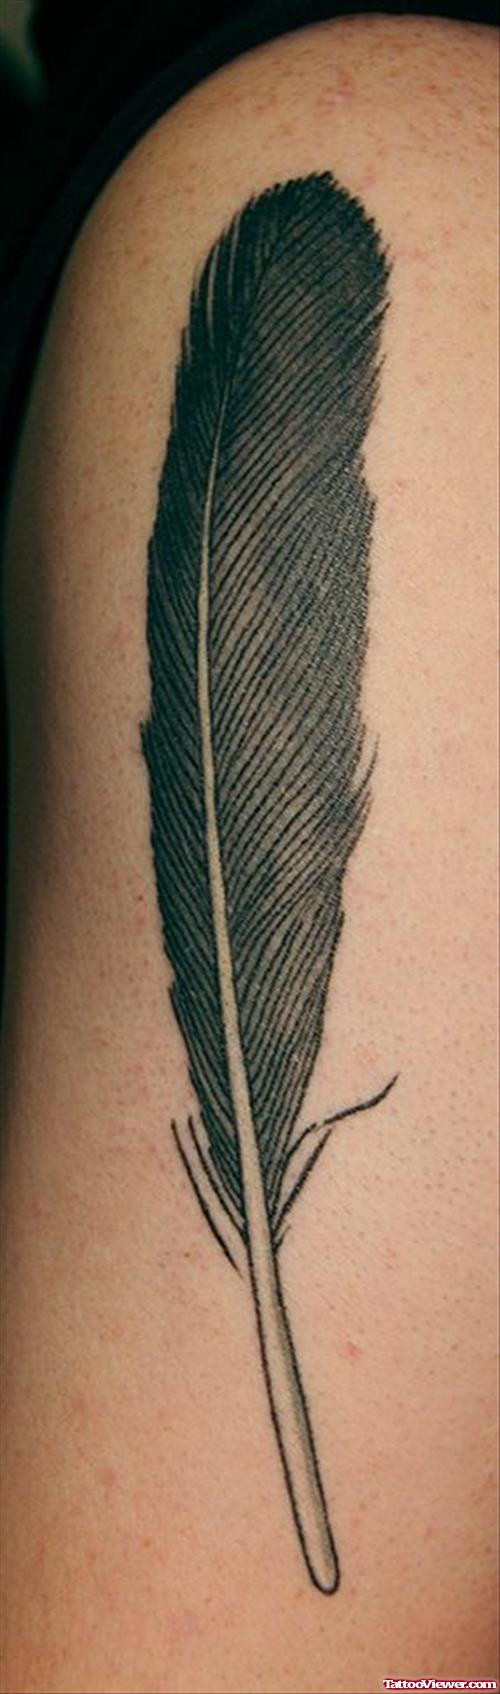 Black Feather Tattoo On Half Sleeve